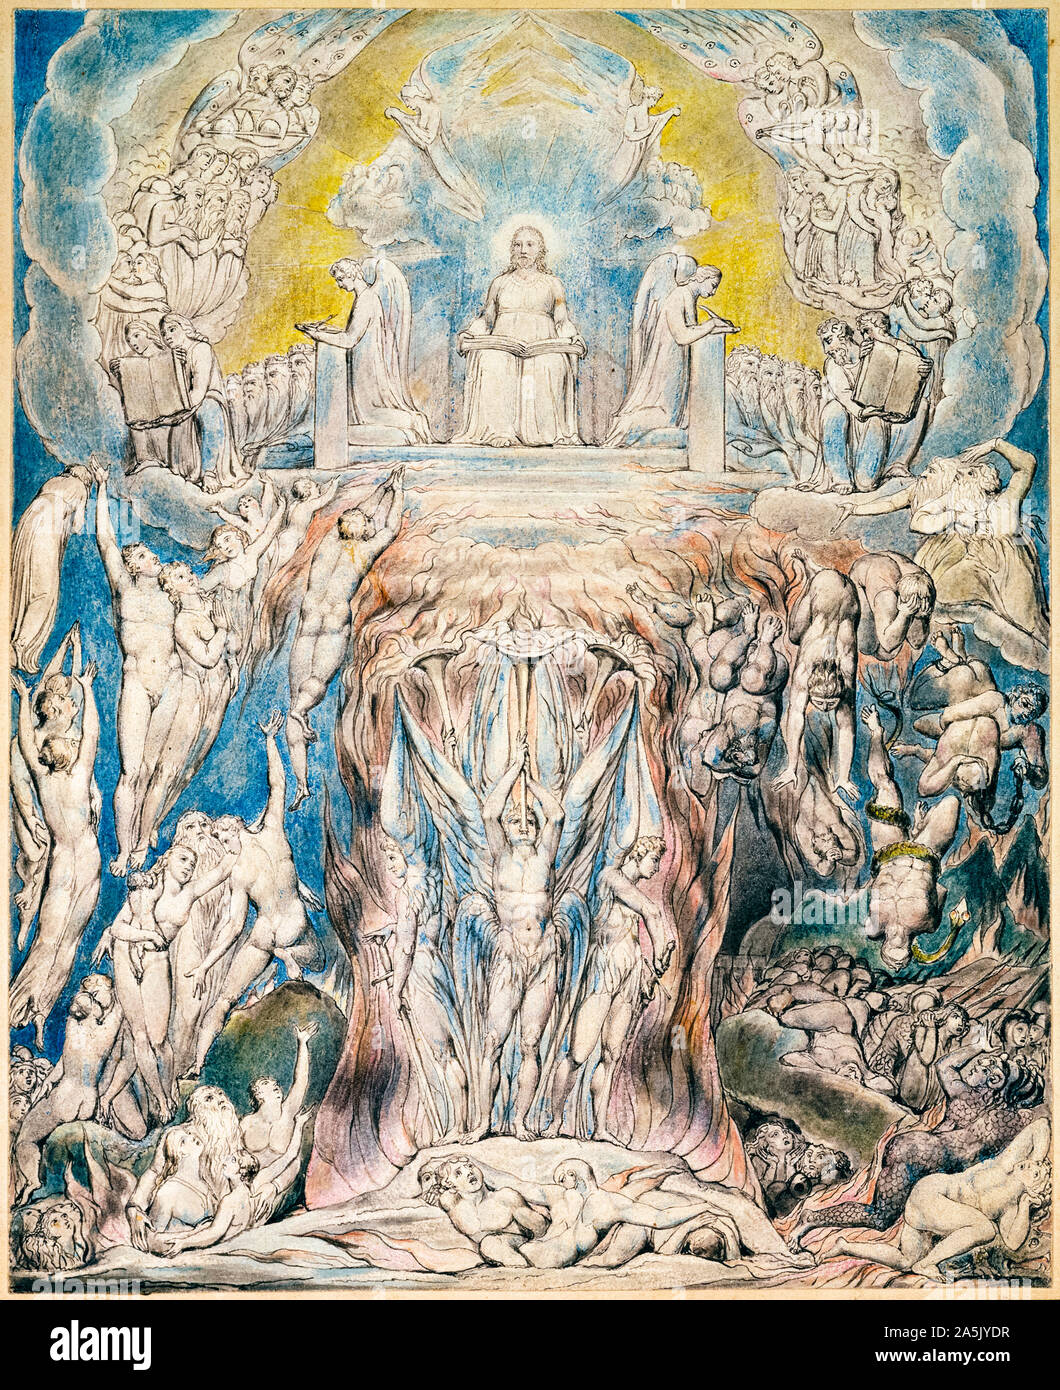 William Blake, peinture, le jour du jugement (le jugement dernier), plume et encre avec aquarelle, illustration, 1808 Banque D'Images